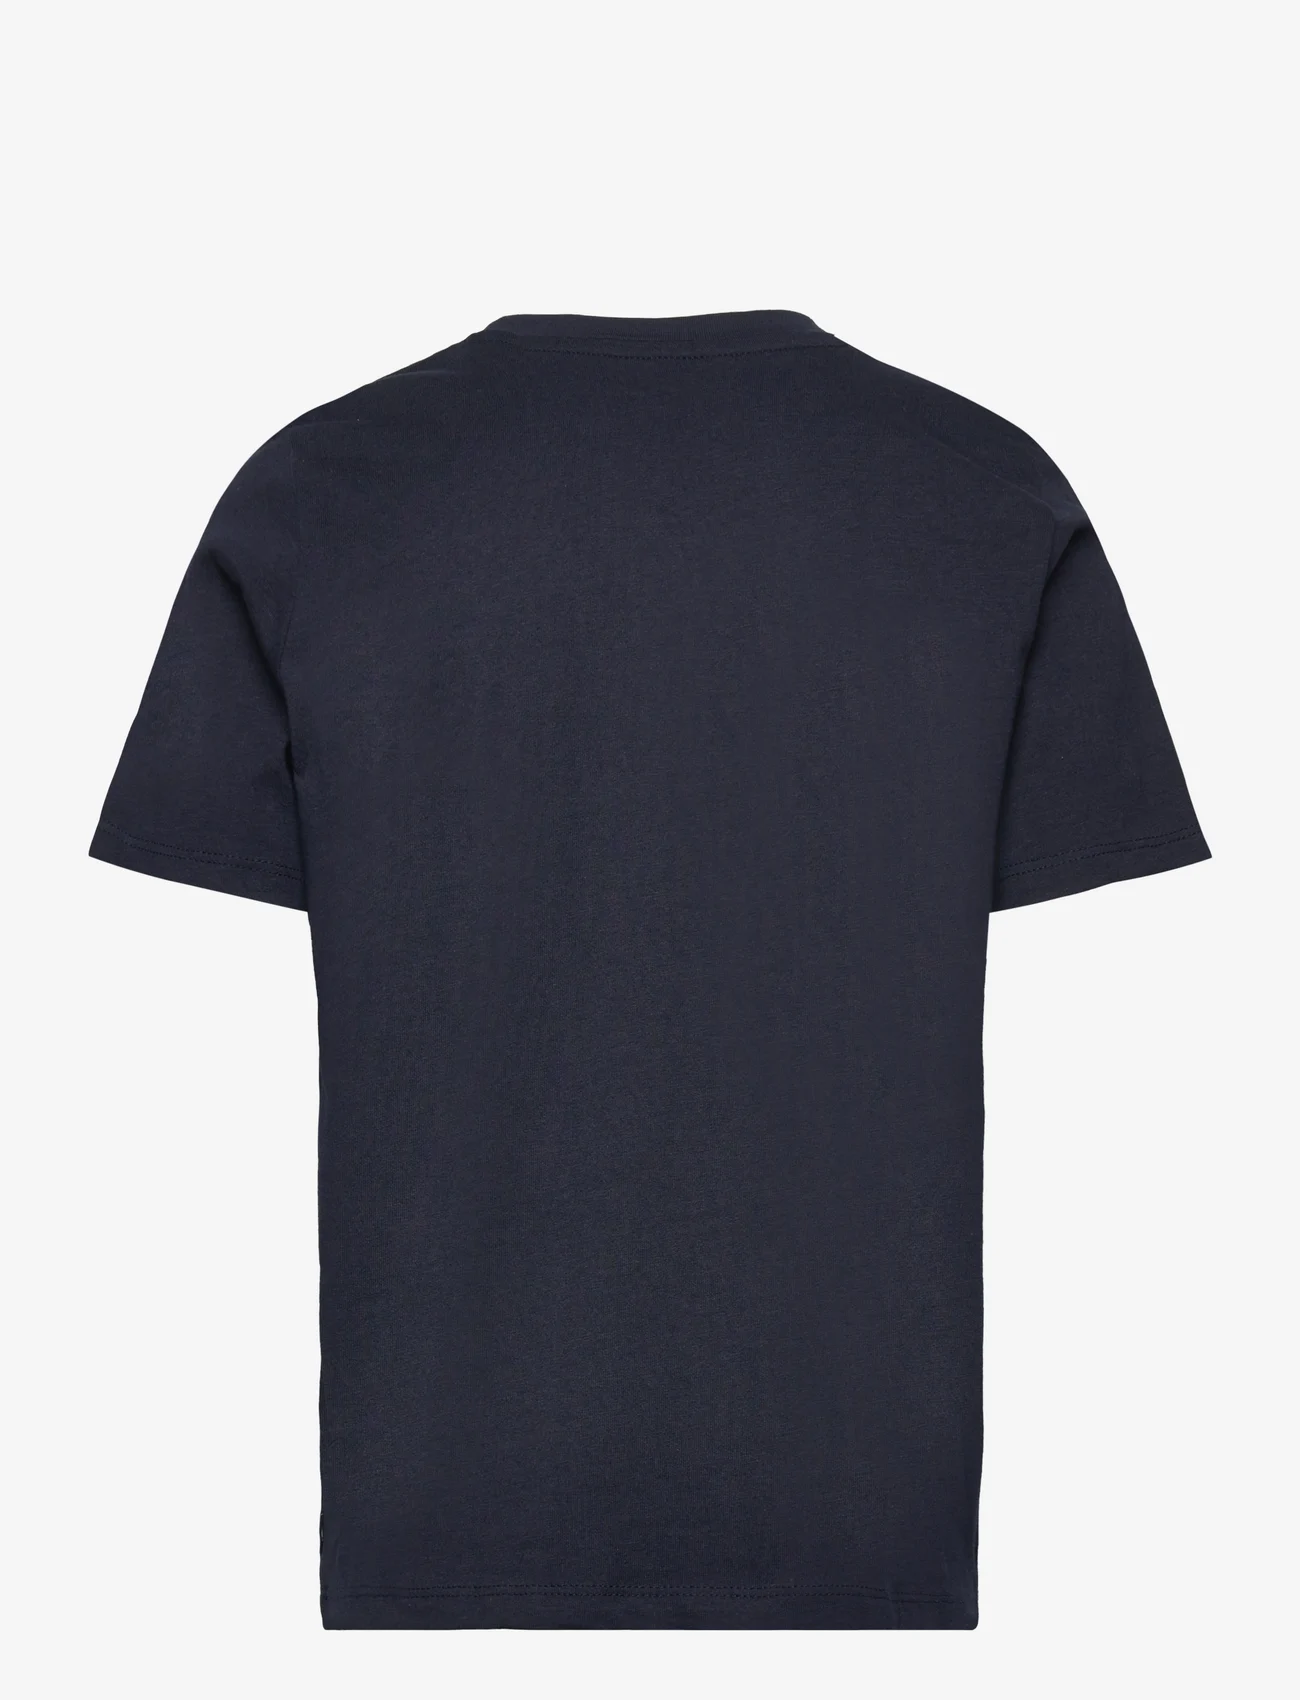 Tom Tailor - printed t-shirt - lühikeste varrukatega t-särgid - sky captain blue - 1